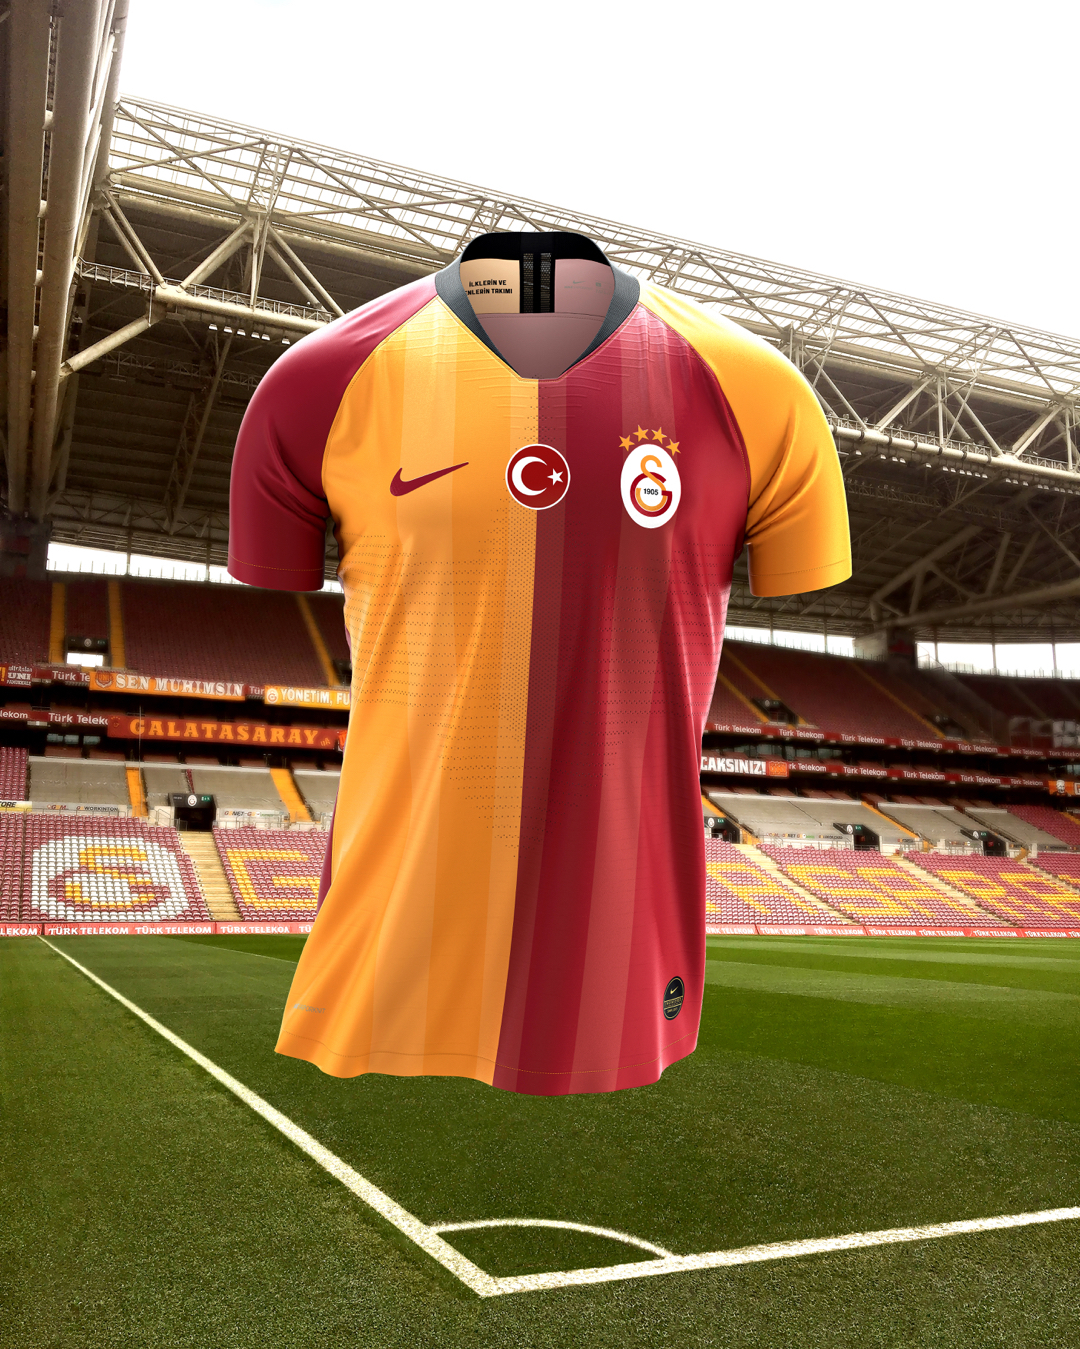 kubus tong Faial Galatasaray thuisshirt 2019-2020 - Voetbalshirts.com